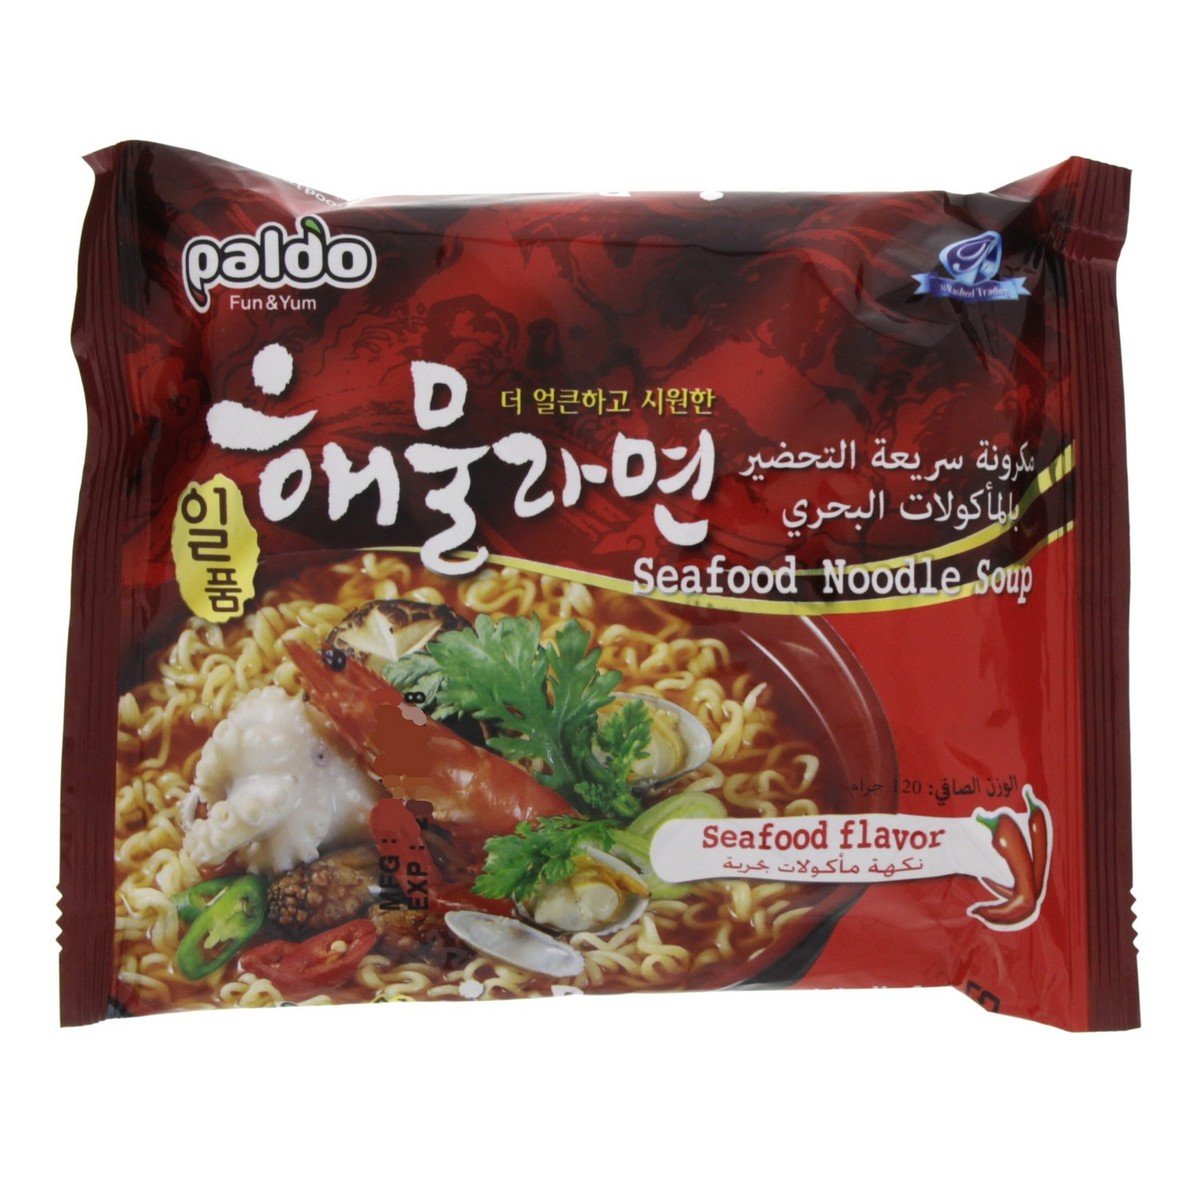 Paldo Seafood Noodles Soup 5 x 120 g